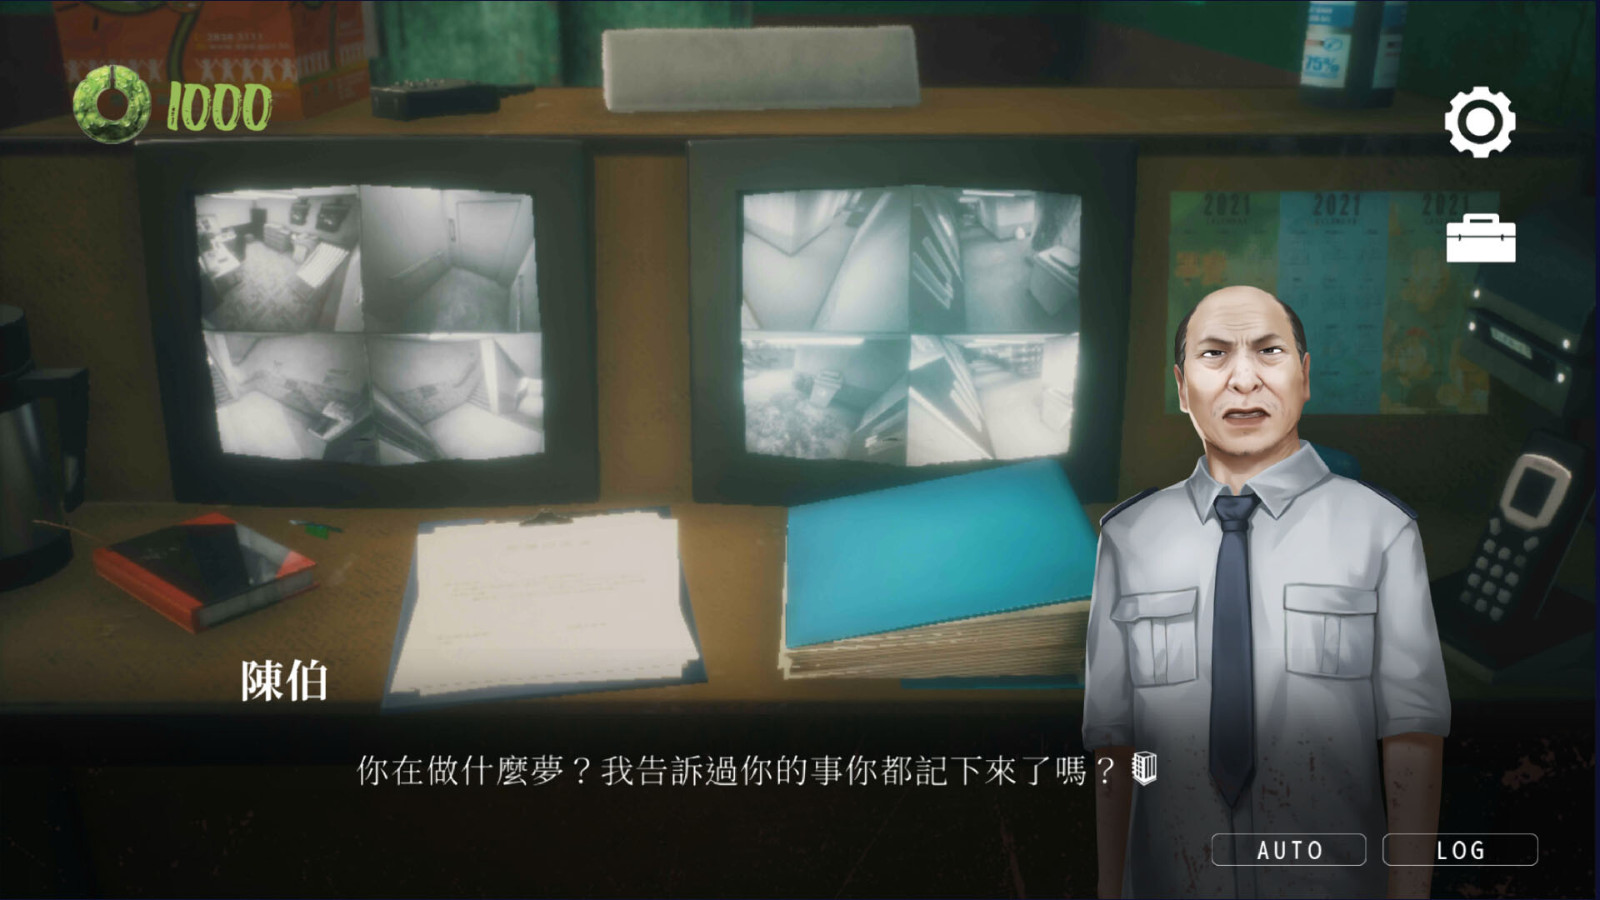 劇情遊戲《猛鬼大廈》STEAM頁面上線 支持簡繁體中文